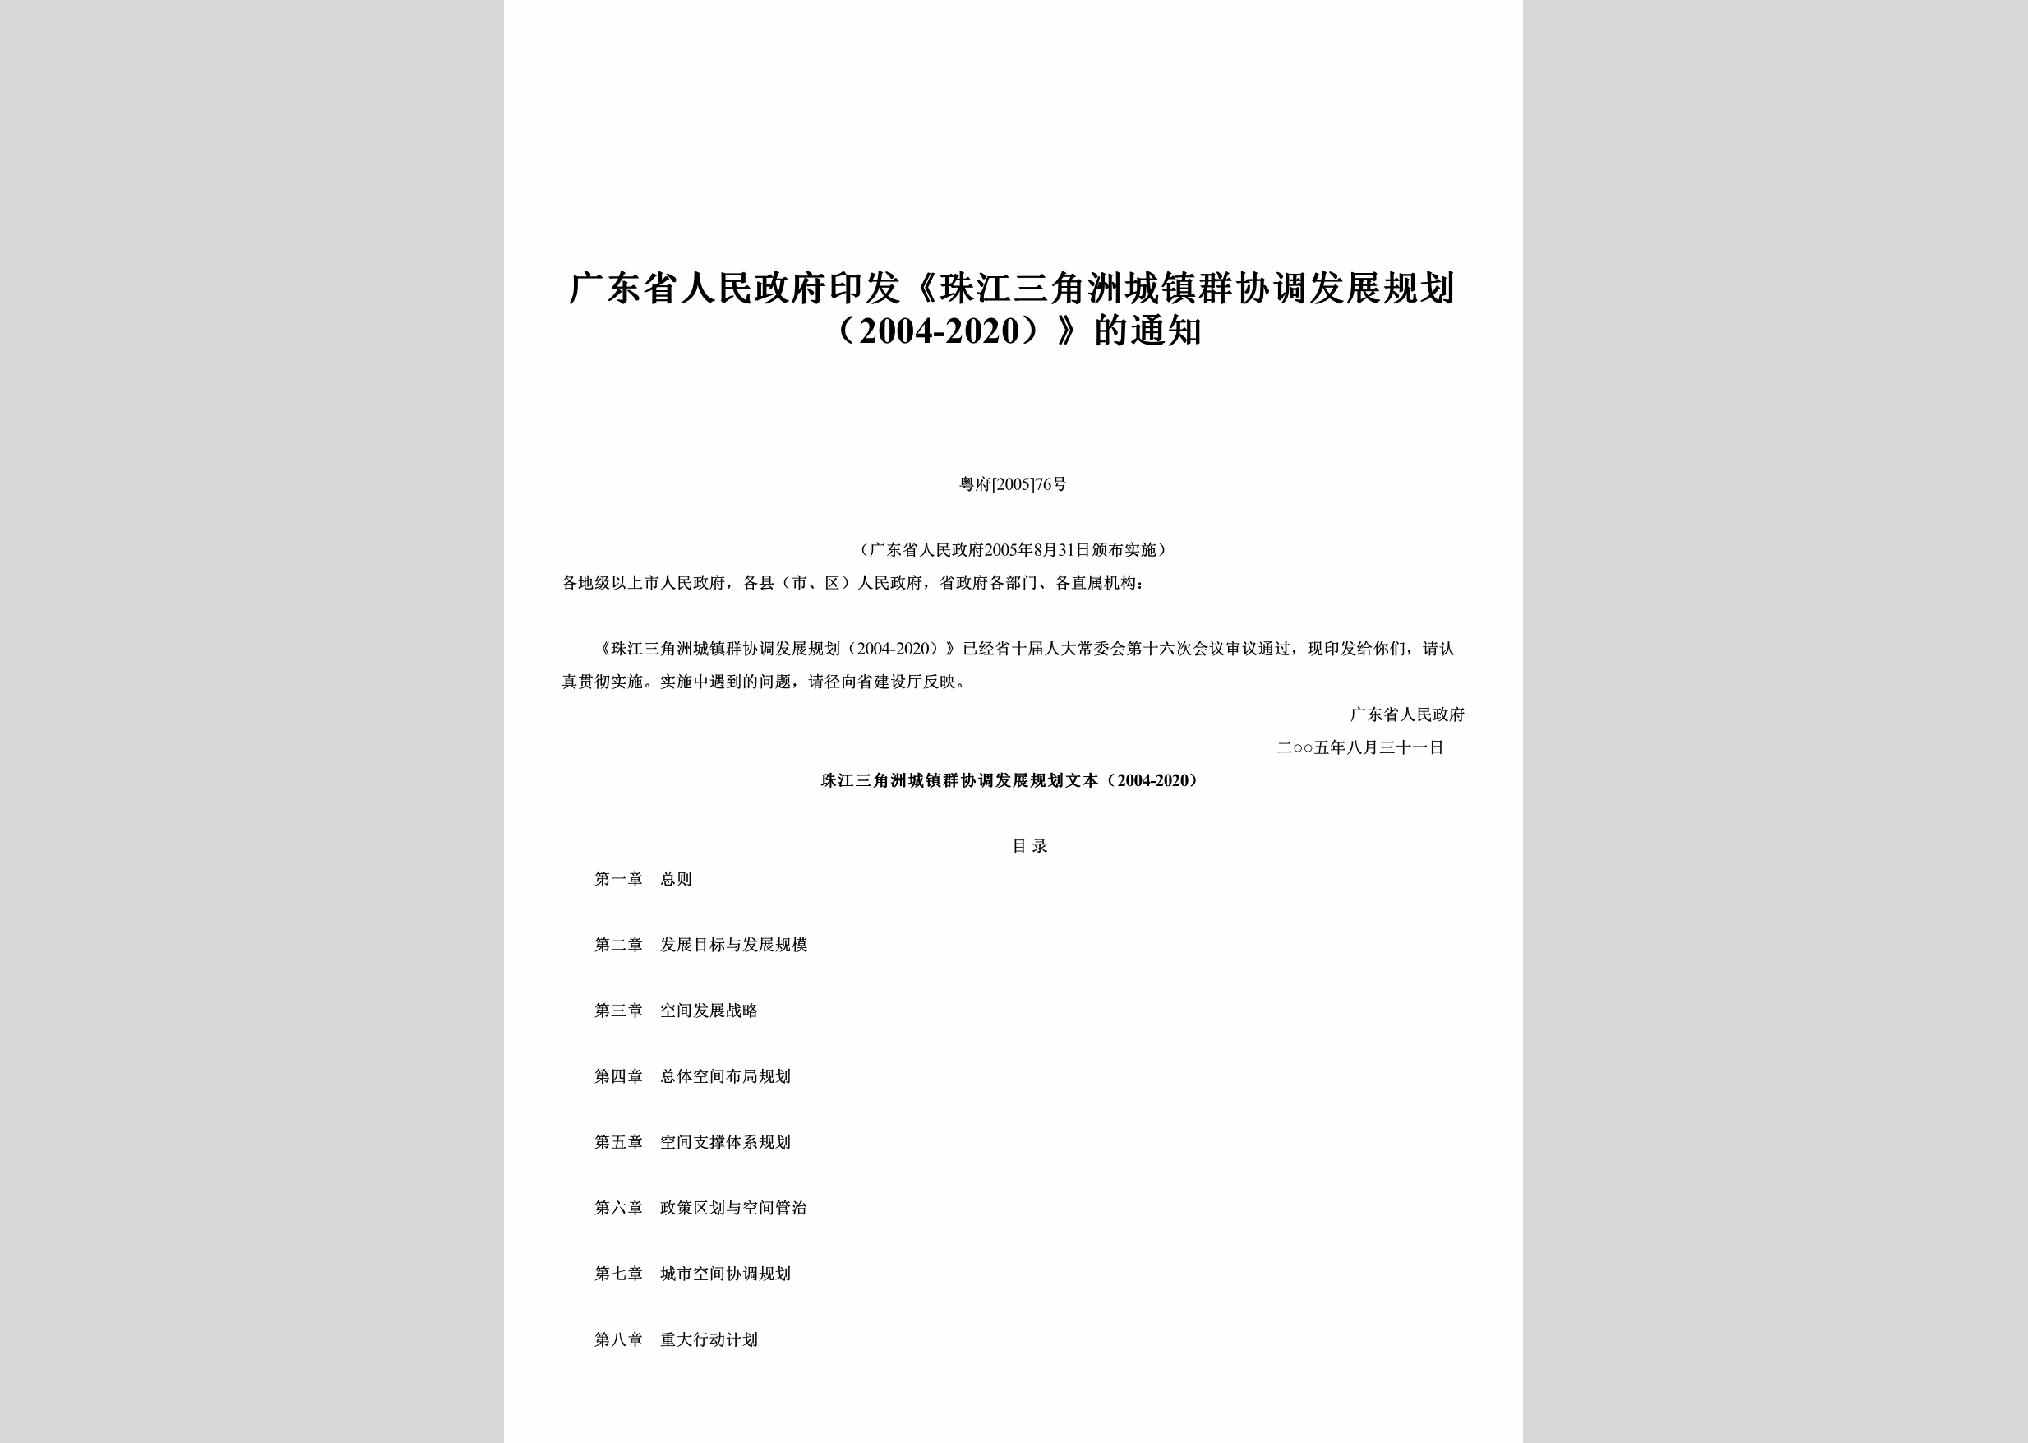 粤府[2005]76号：印发《珠江三角洲城镇群协调发展规划（2004-2020）》的通知